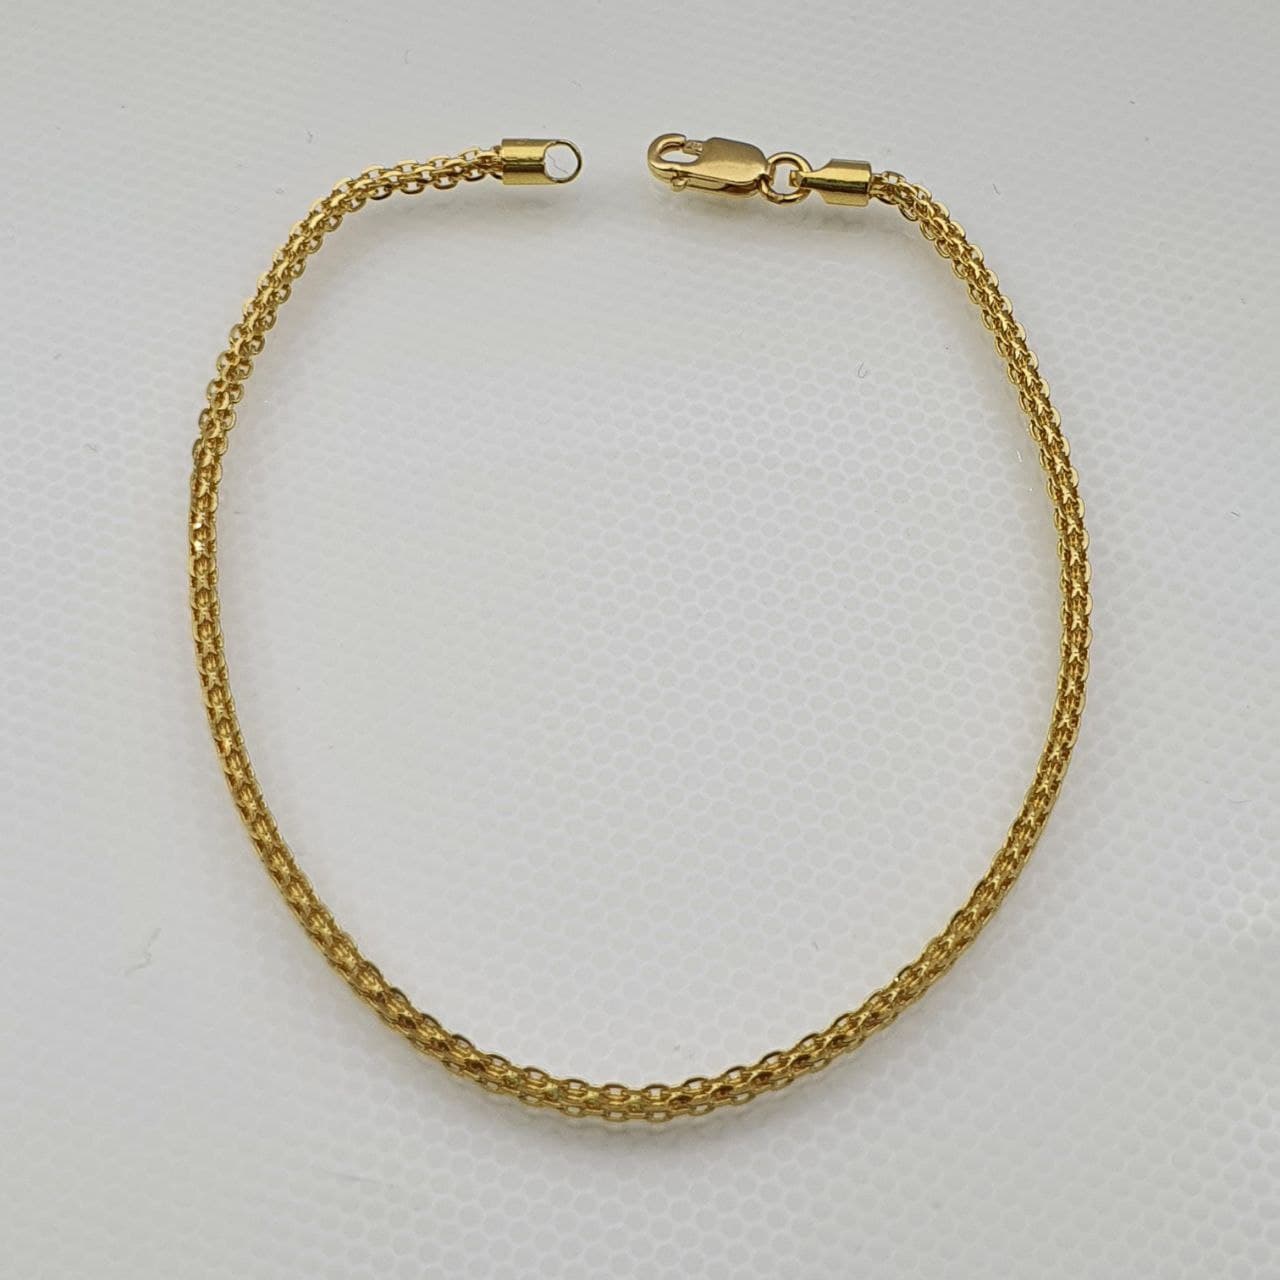 22k / 916 Gold Milan Bracelet v2-Bracelets-Best Gold Shop